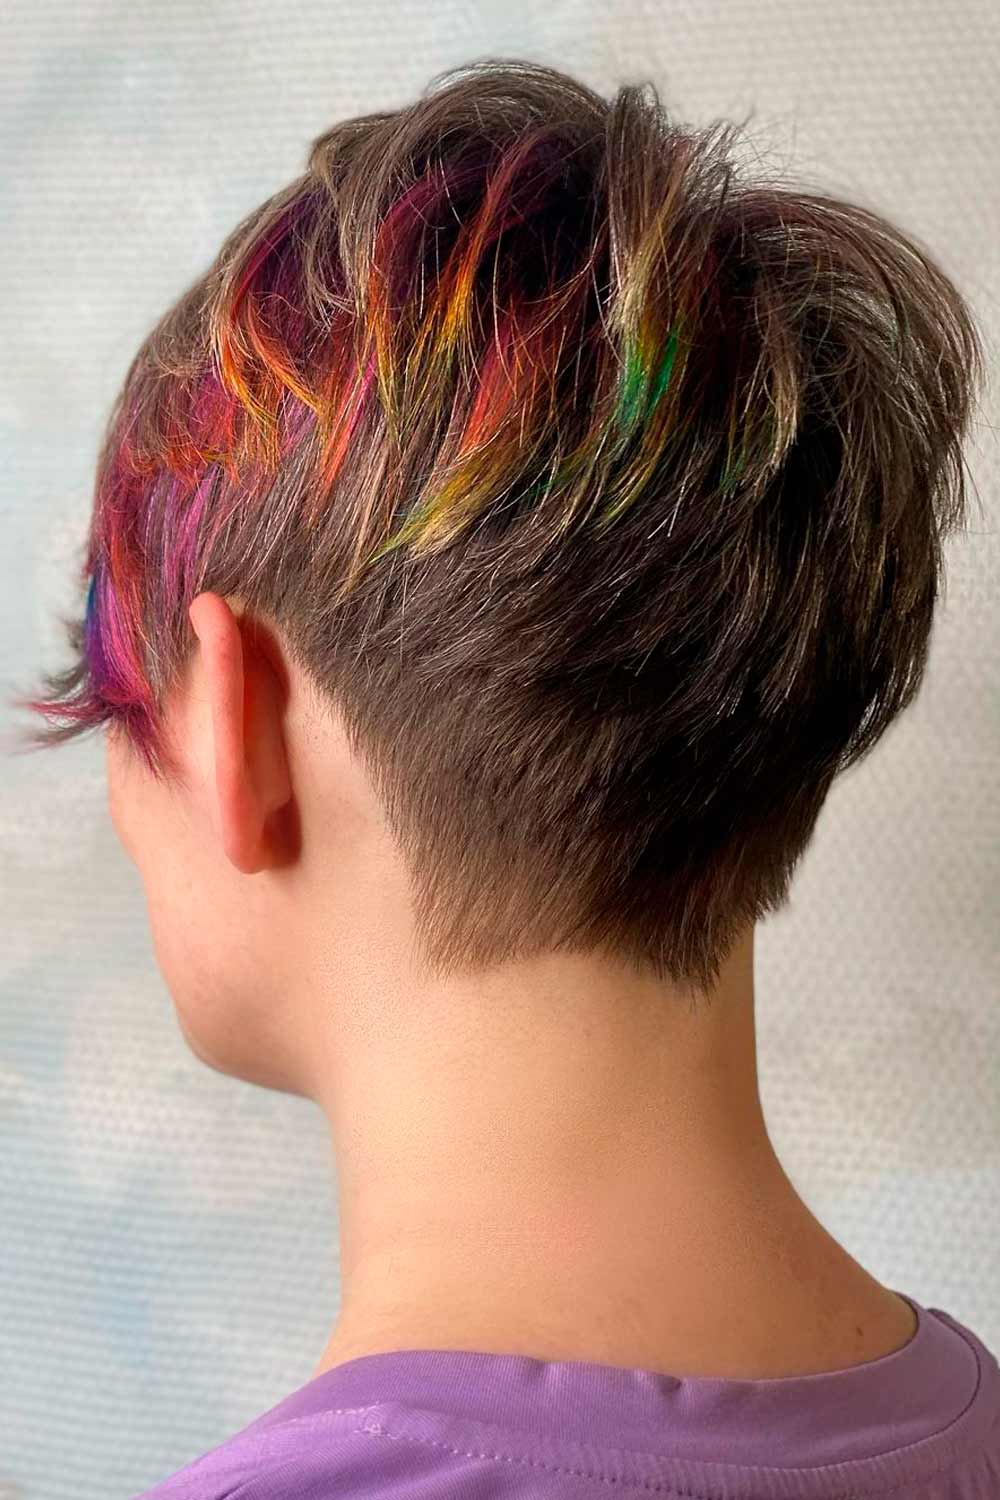 Short Hair with Rainbow Blocks